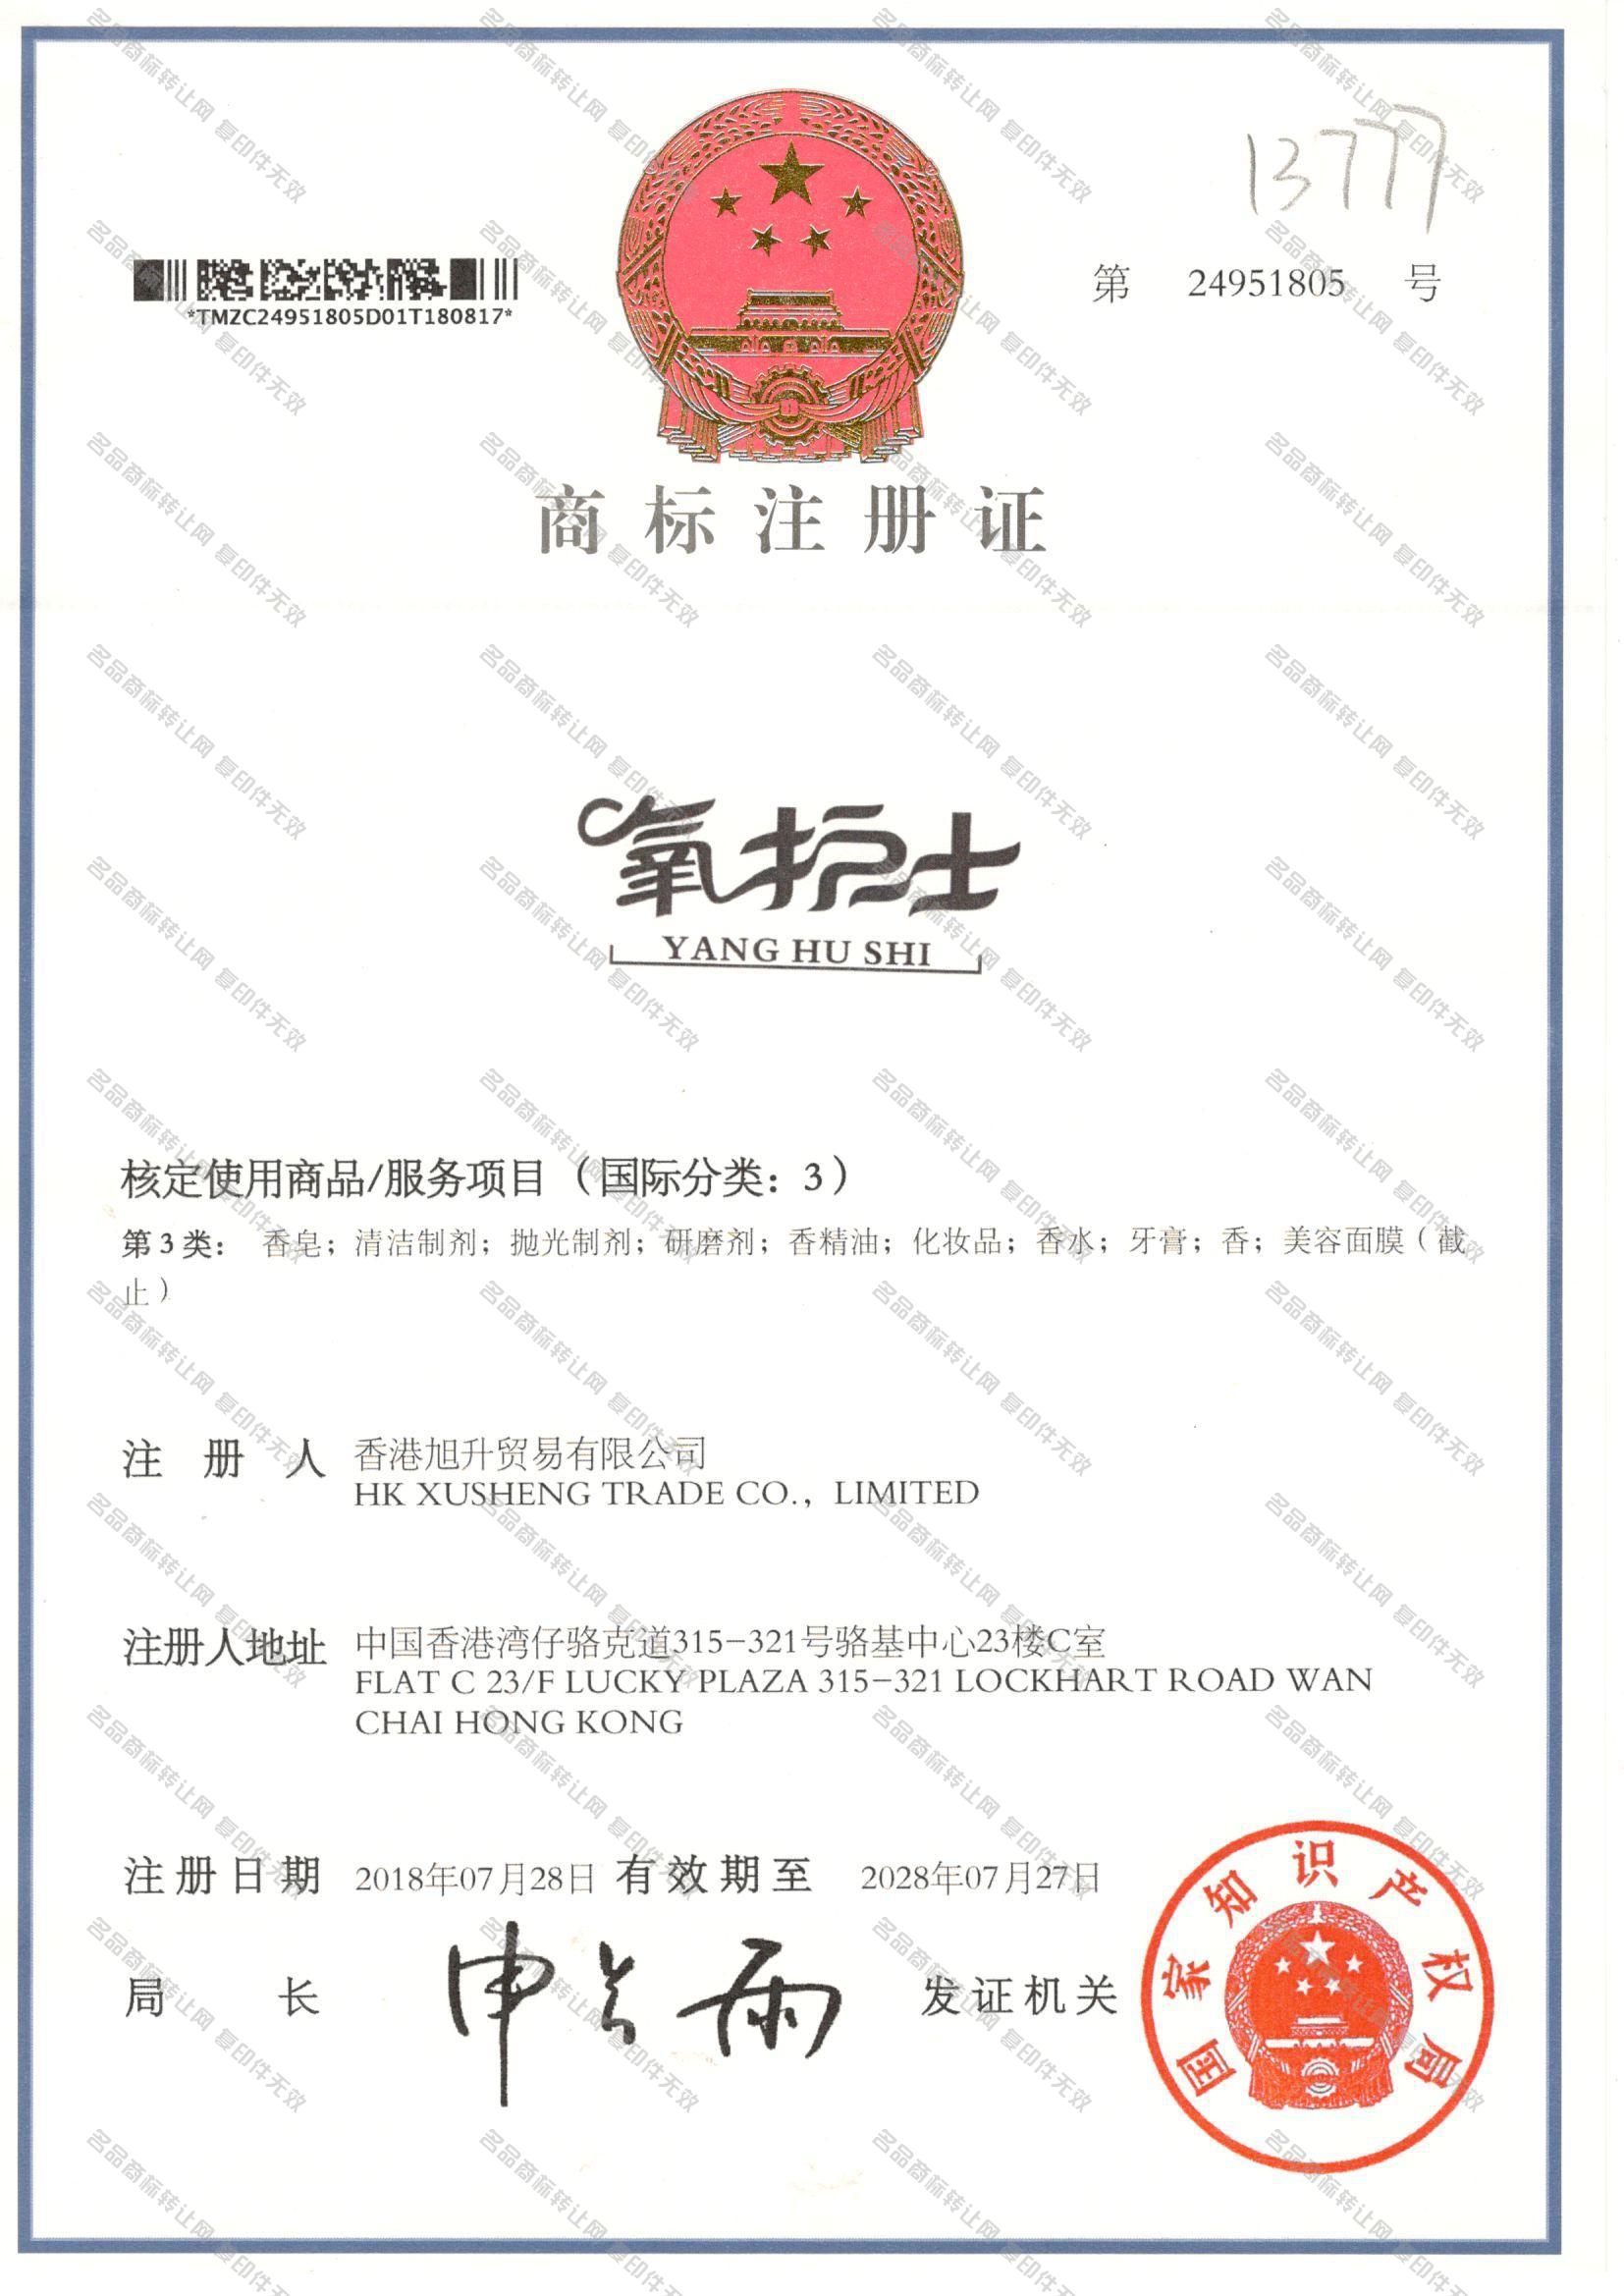 氧护士 YANGHUSHI注册证